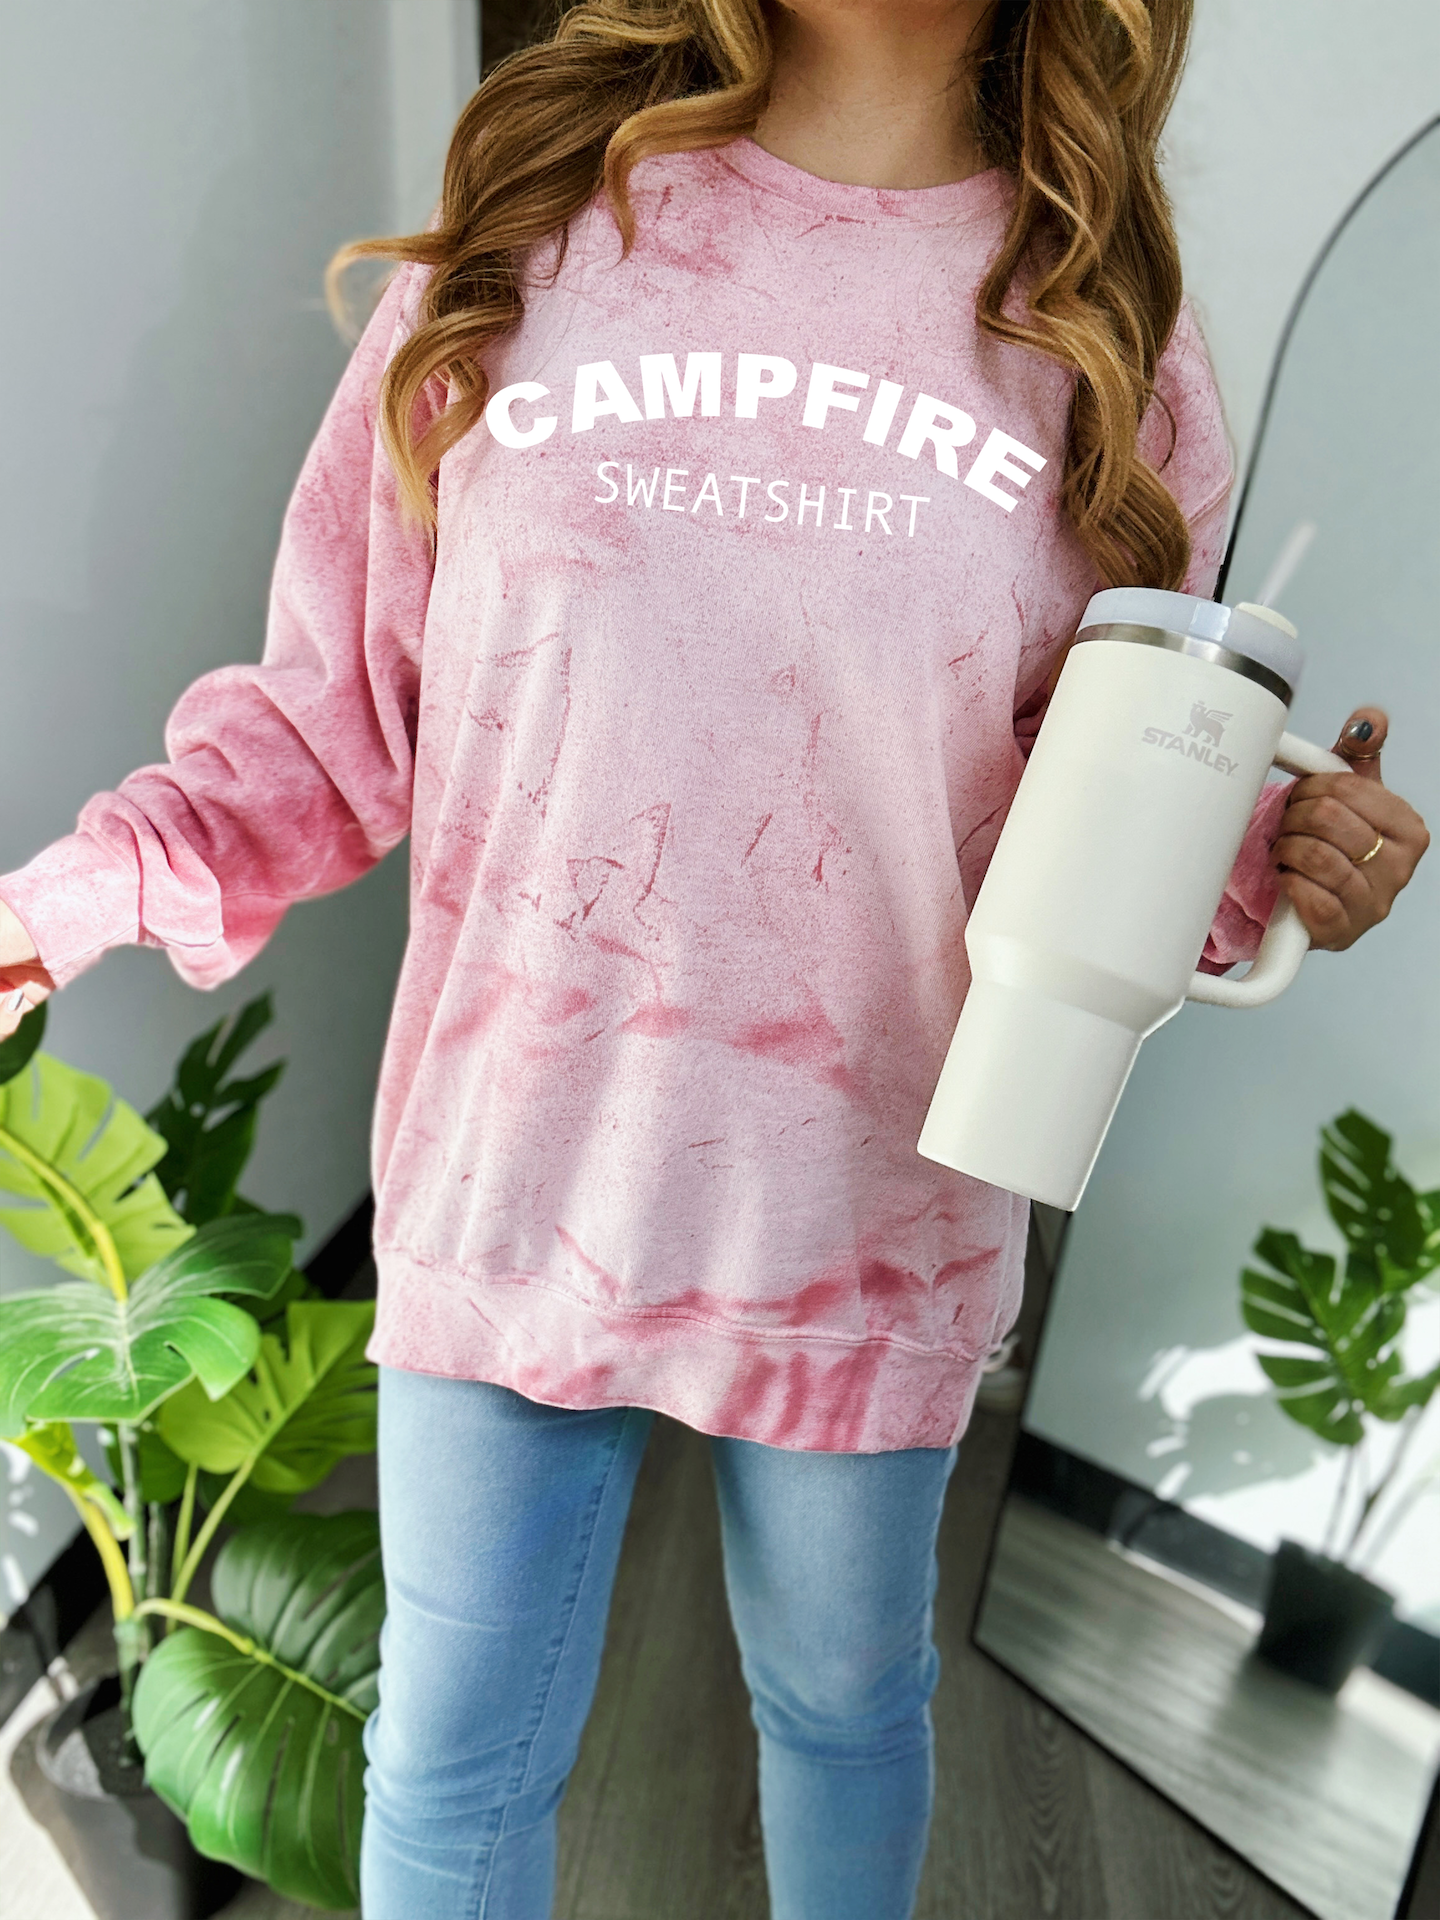 Campfire Sweatshirt PUFF Comfort Colors Colorblast Sweatshirt